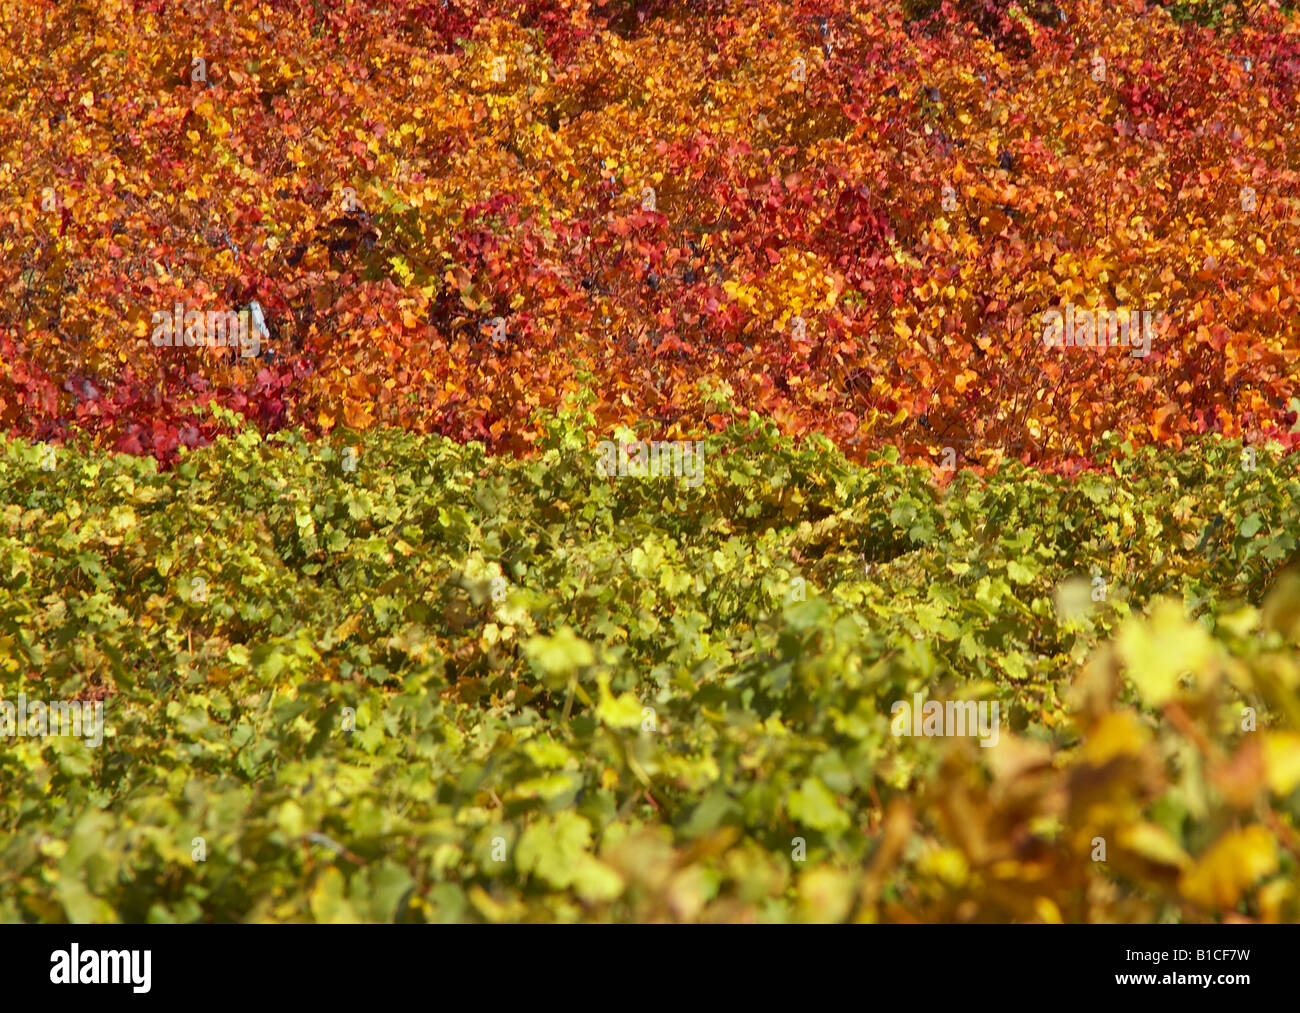 vineyard in autumn Stock Photo